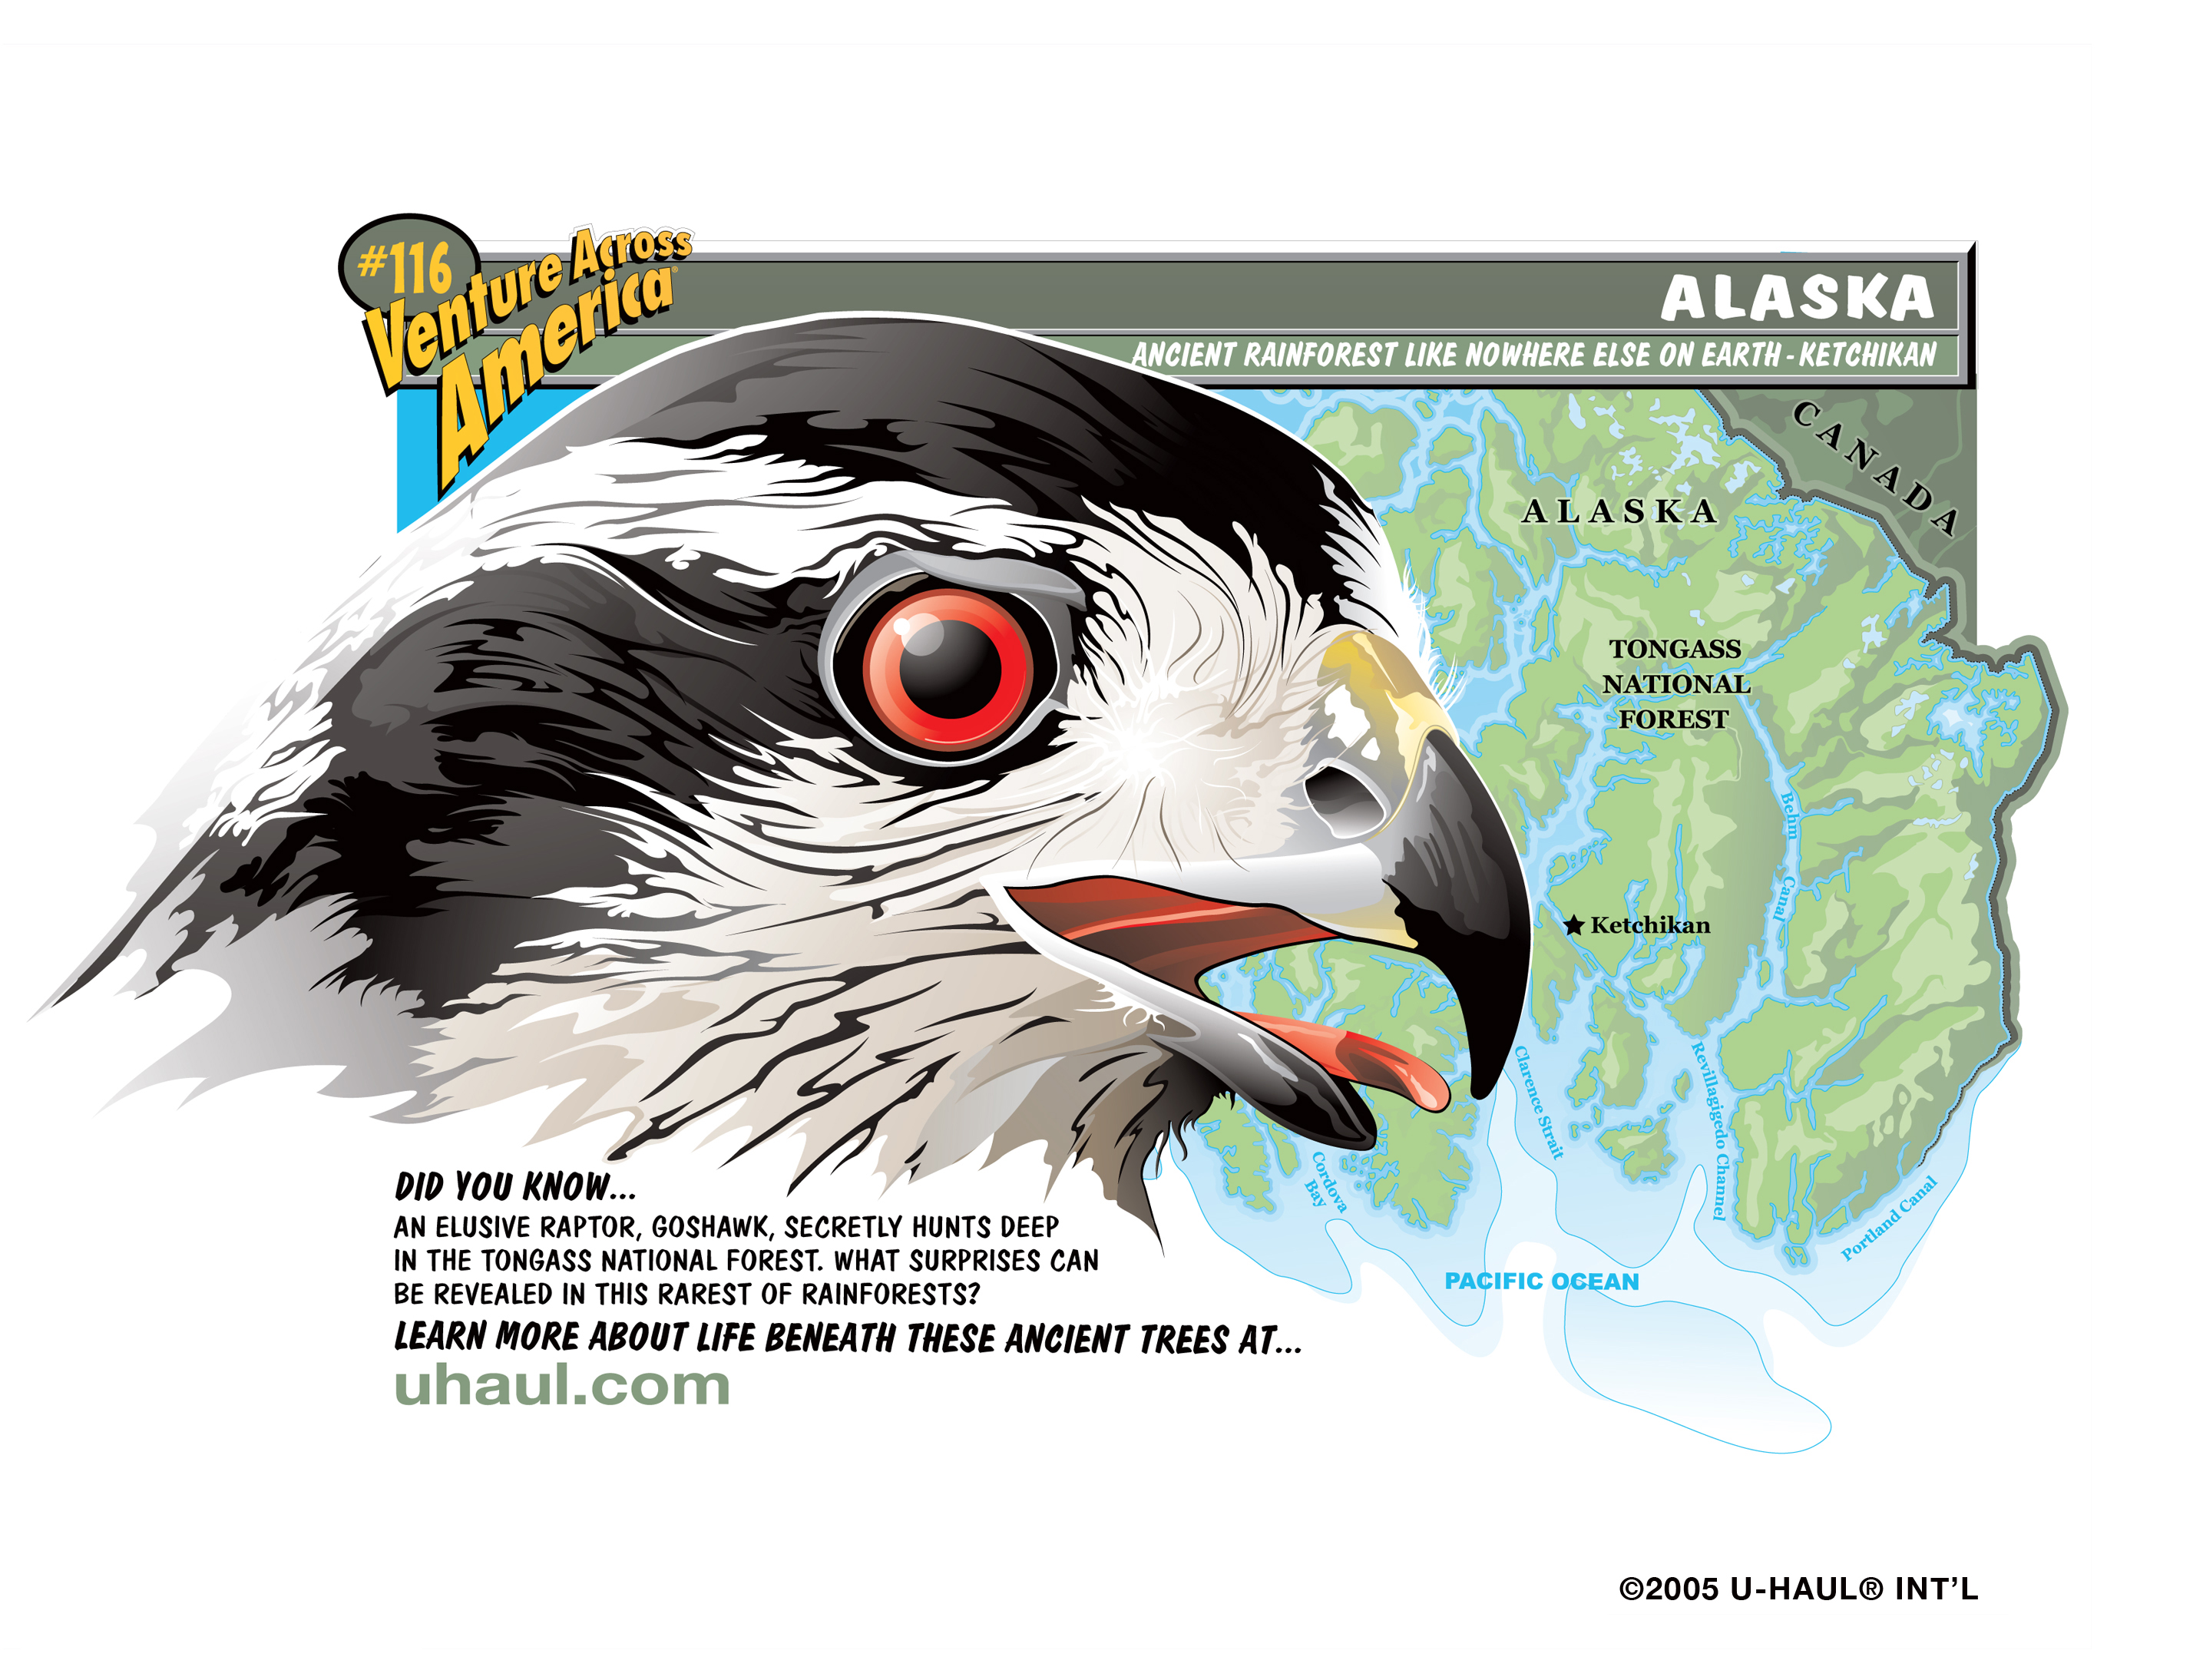 U-Haul SuperGraphic representing Alaska